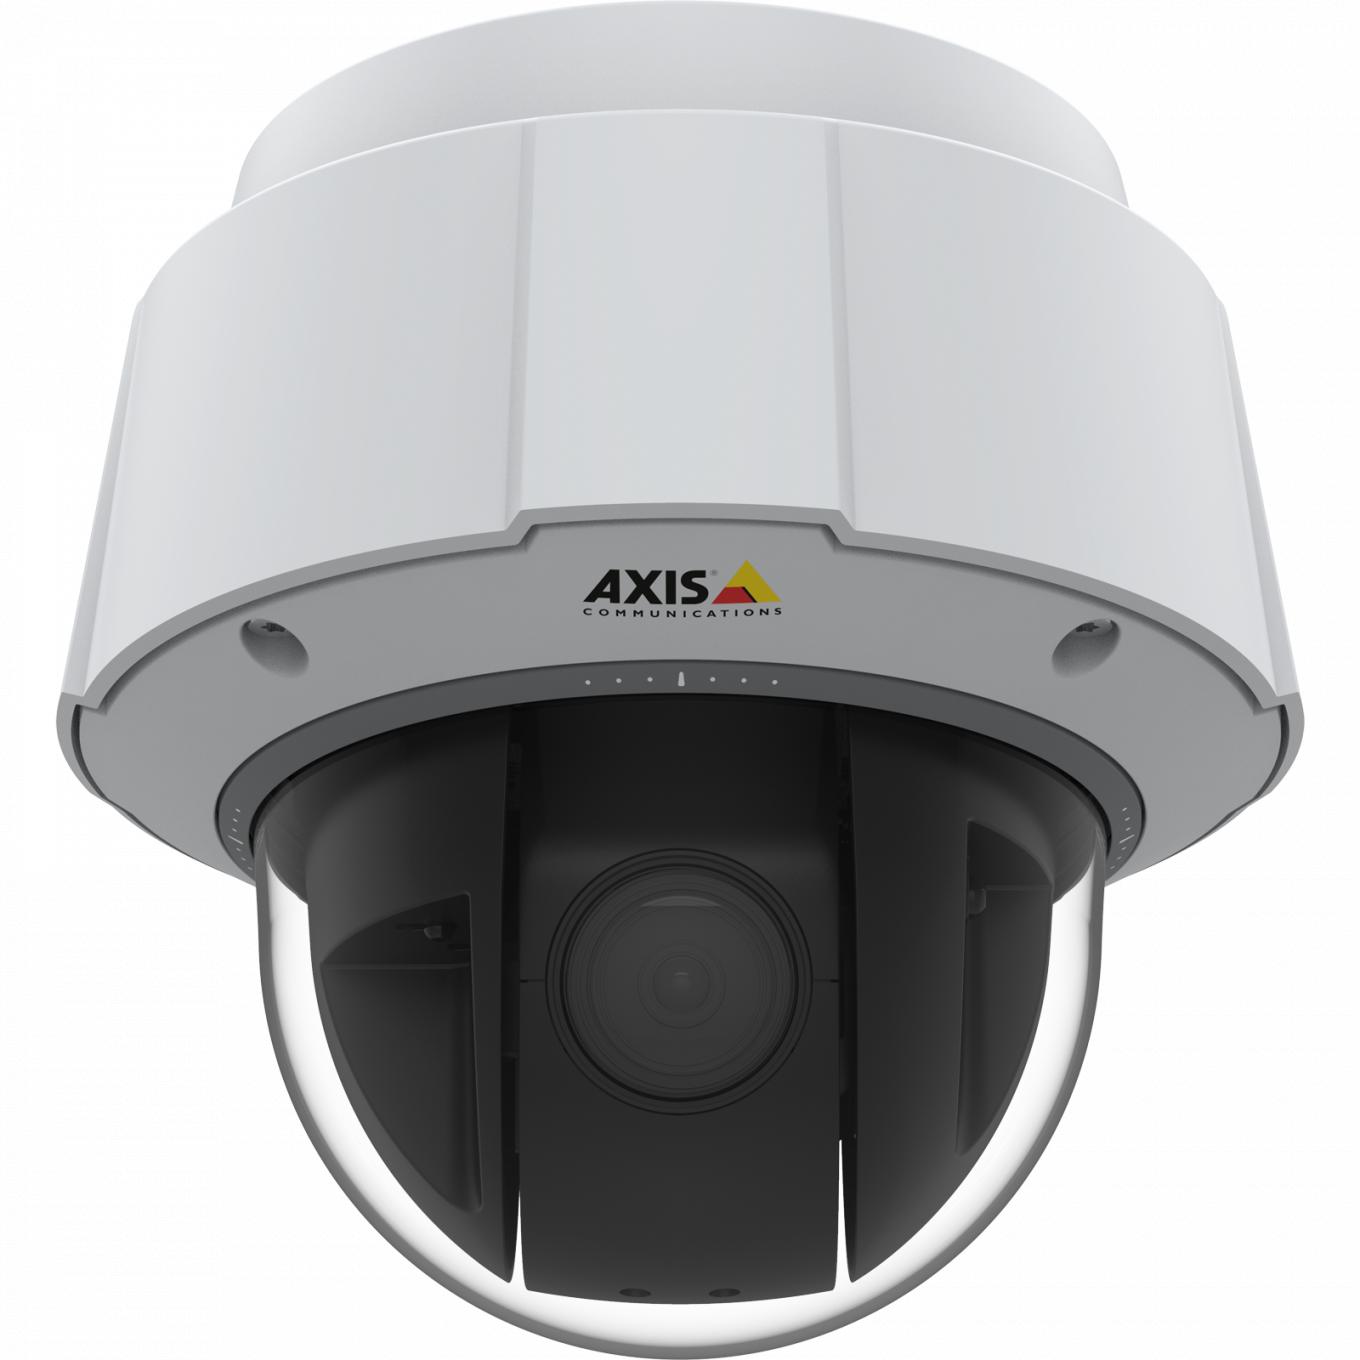 A câmera IP AXIS Q6075-E possui módulo TPM com certificação FIPS 140-2 nível 2. A câmera é vista pela frente.